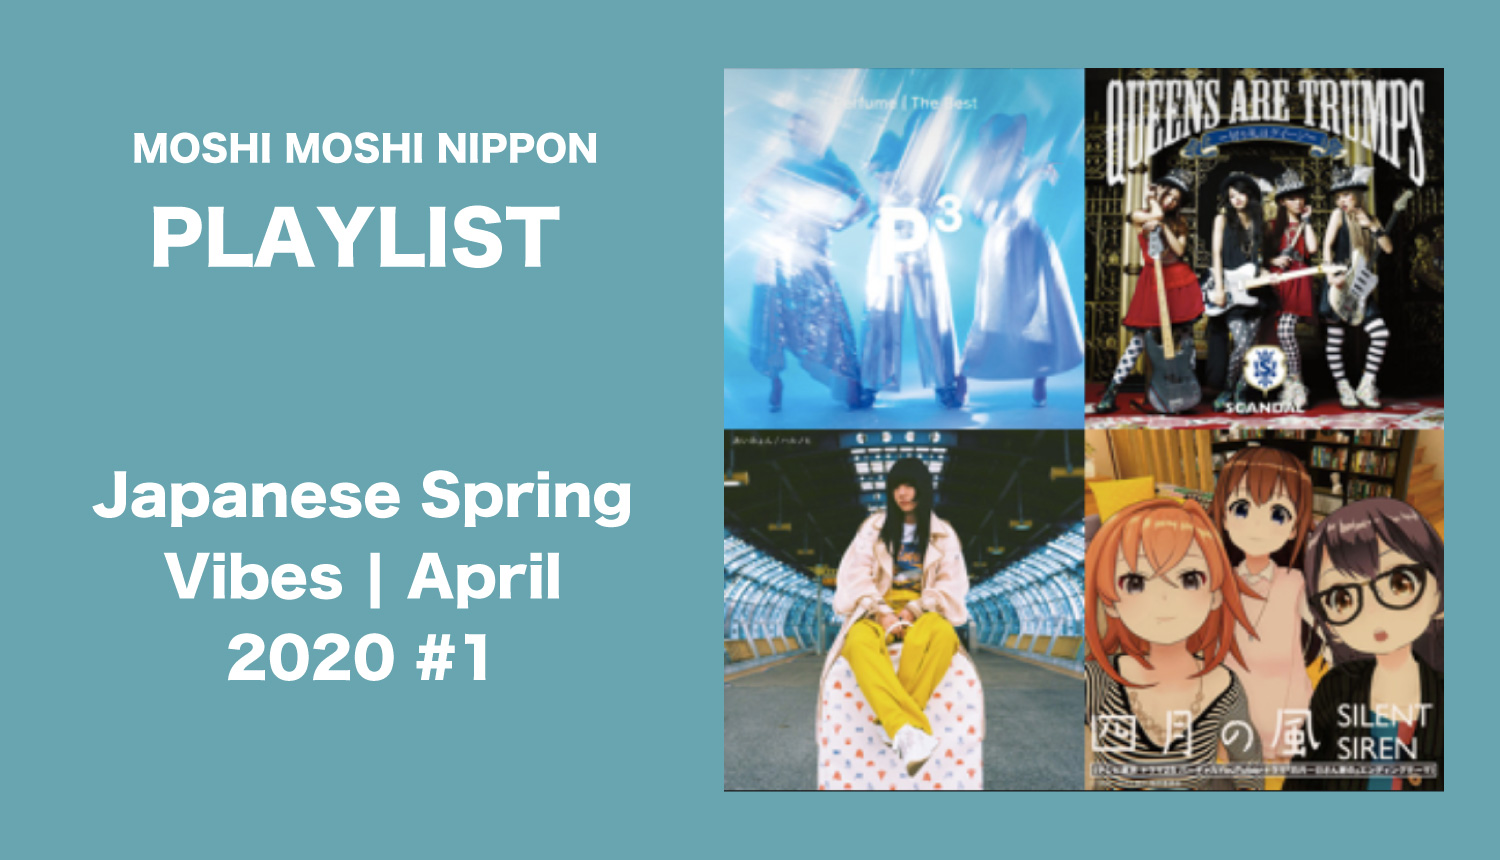 Moshi Moshi Playlist Japanese Spring Vibes April 1 Moshi Moshi Nippon もしもしにっぽん